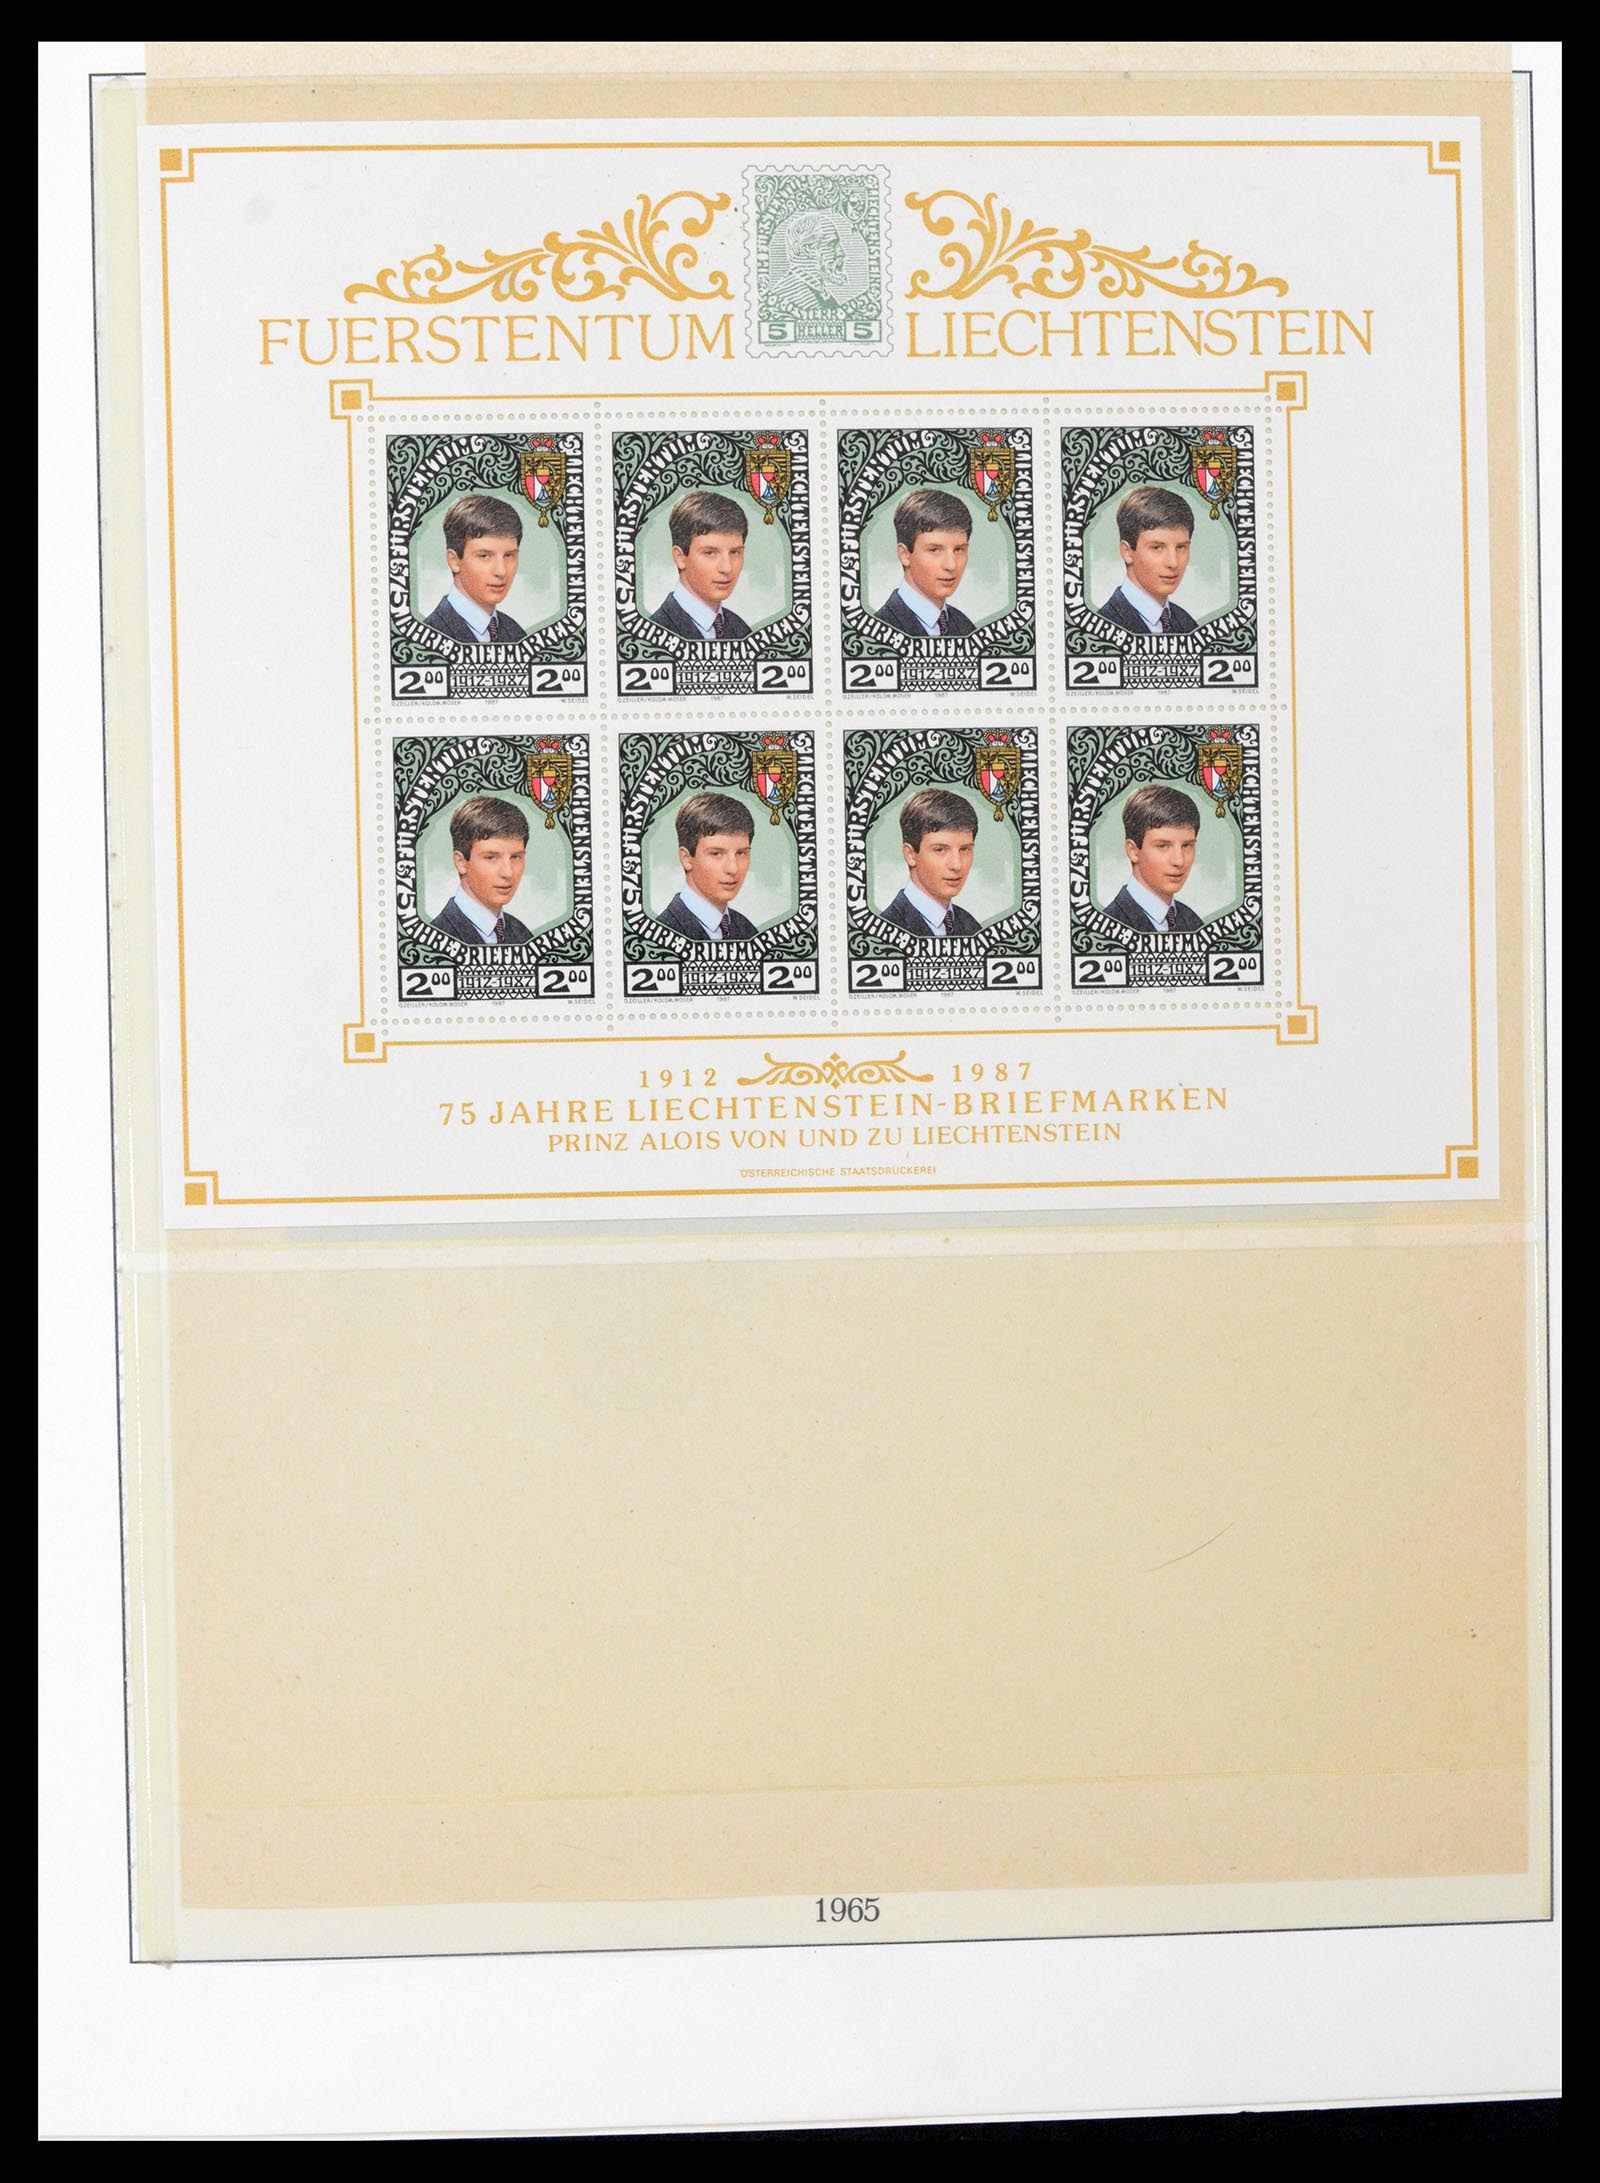 37295 091 - Stamp collection 37295 Liechtenstein 1912-2009.